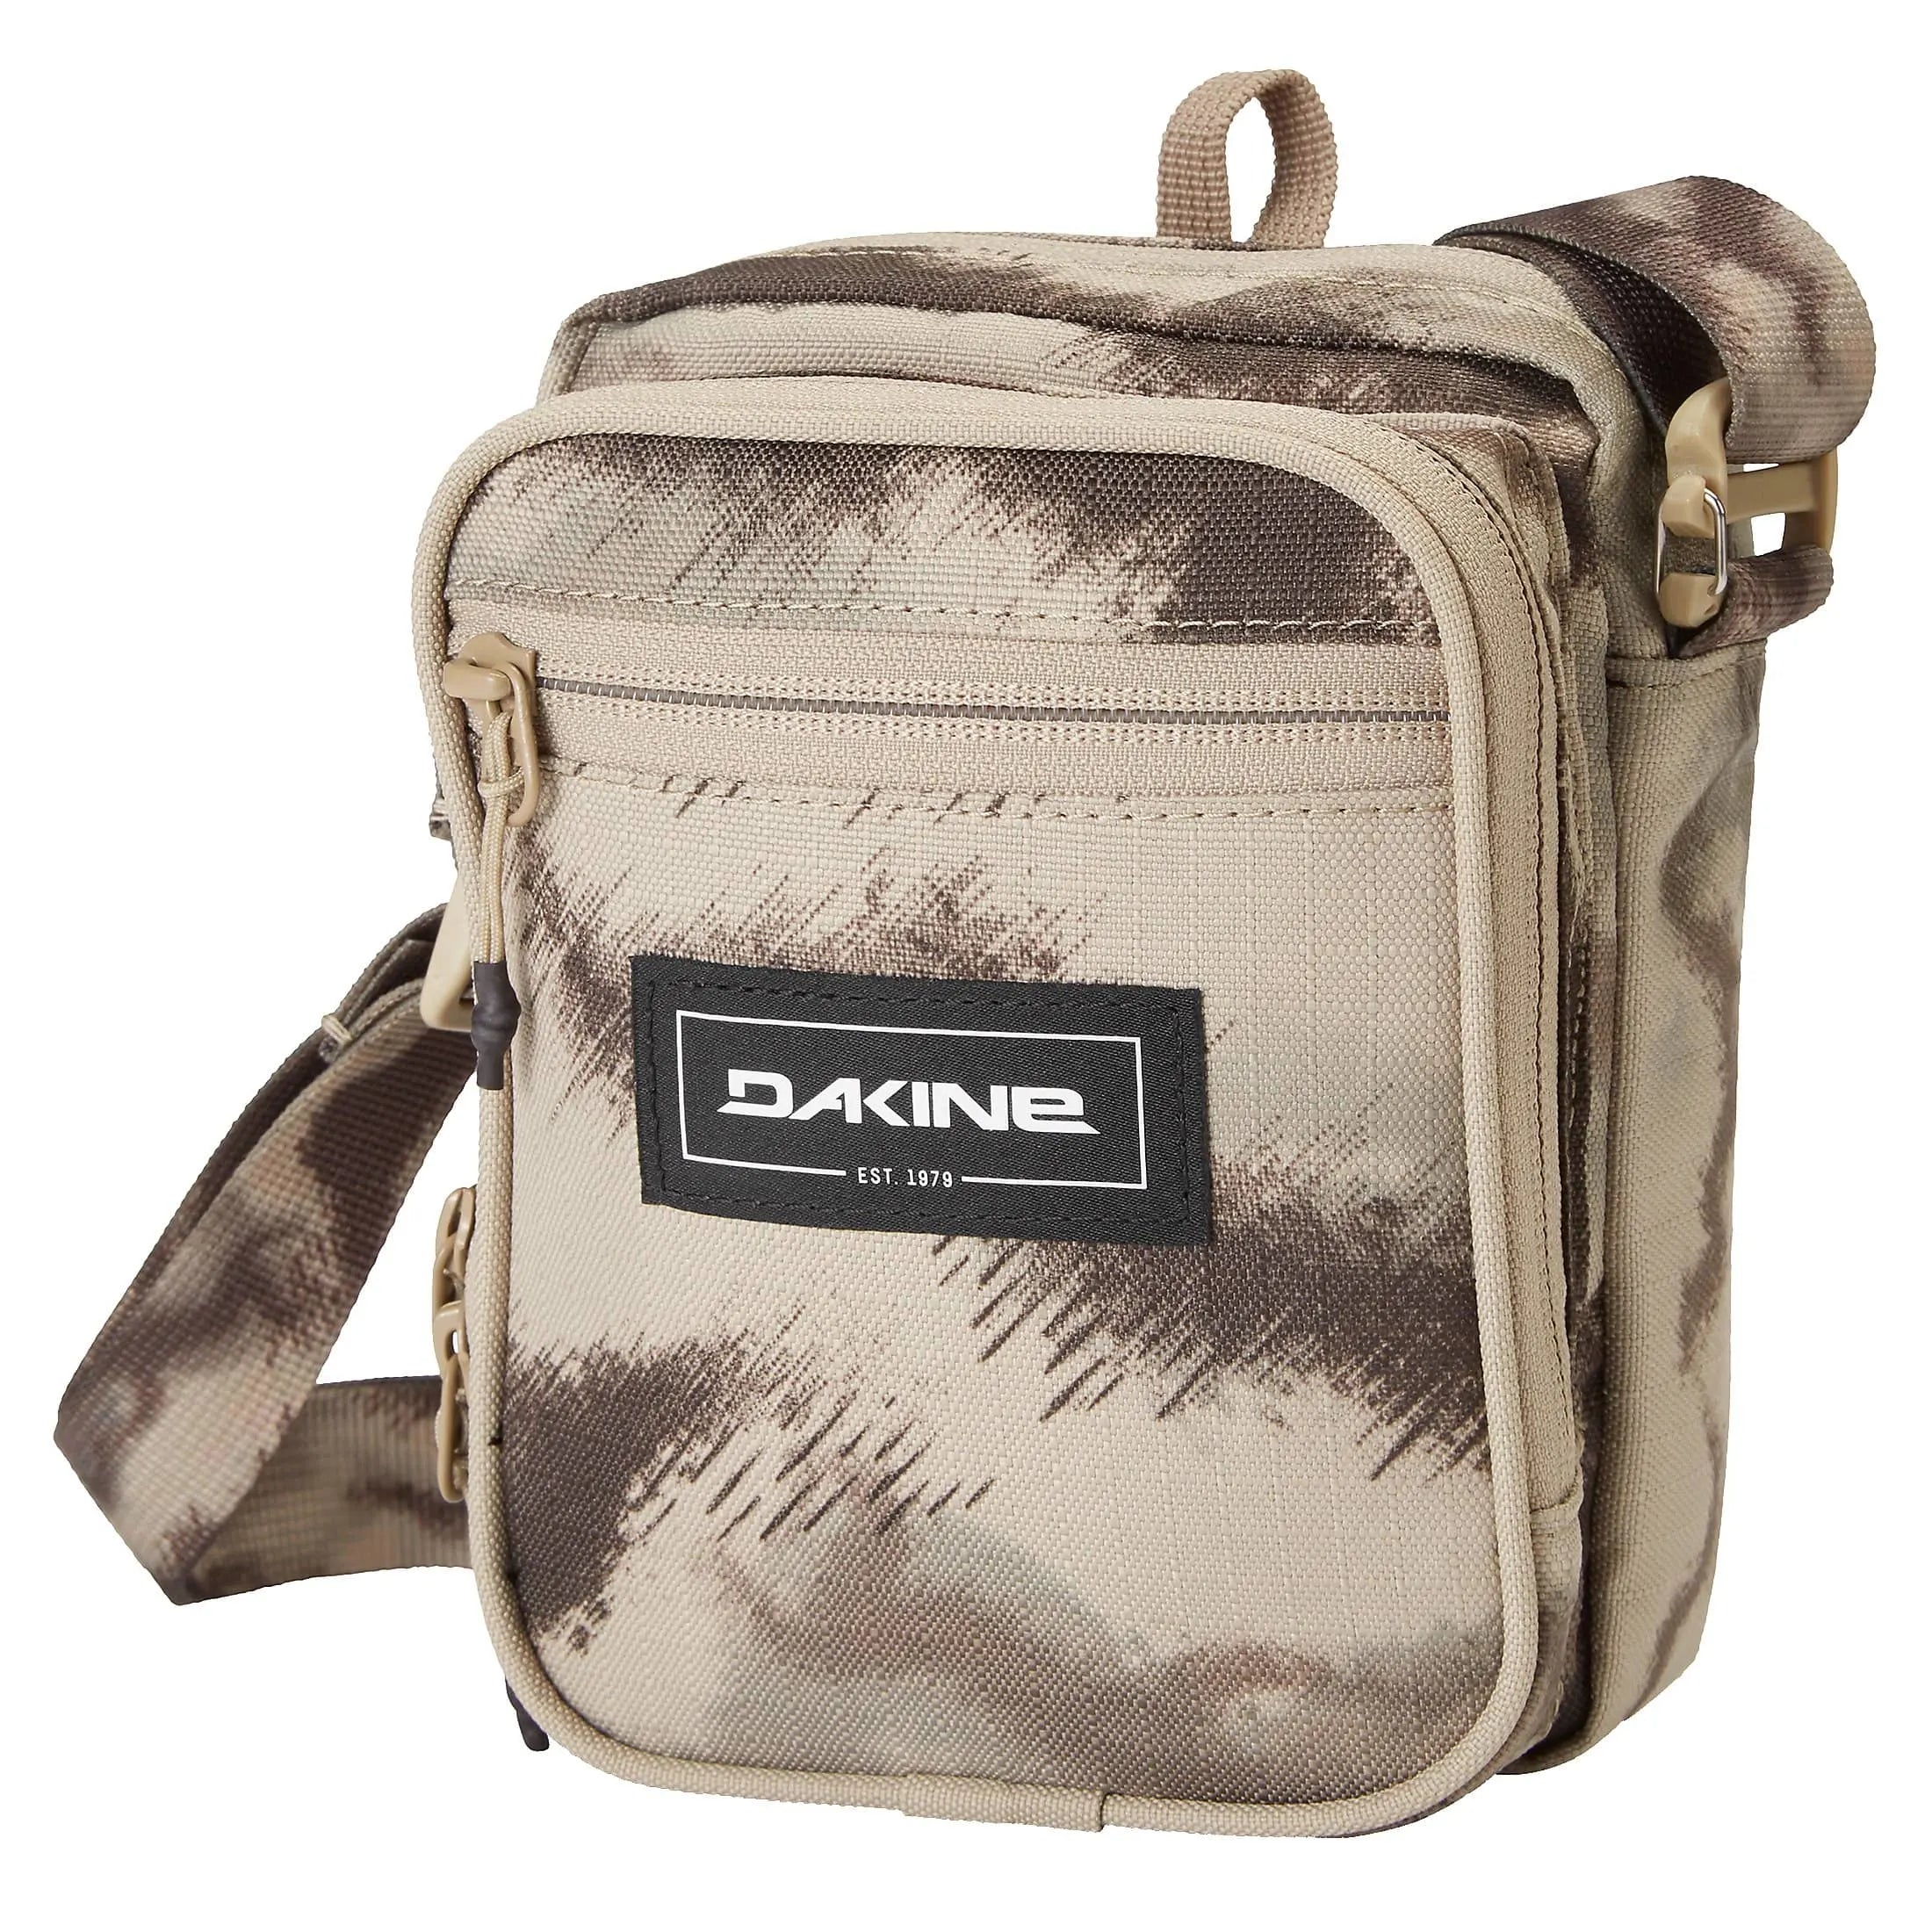 Dakine Packs & Bags Field Bag Handbag 18 cm - rincon